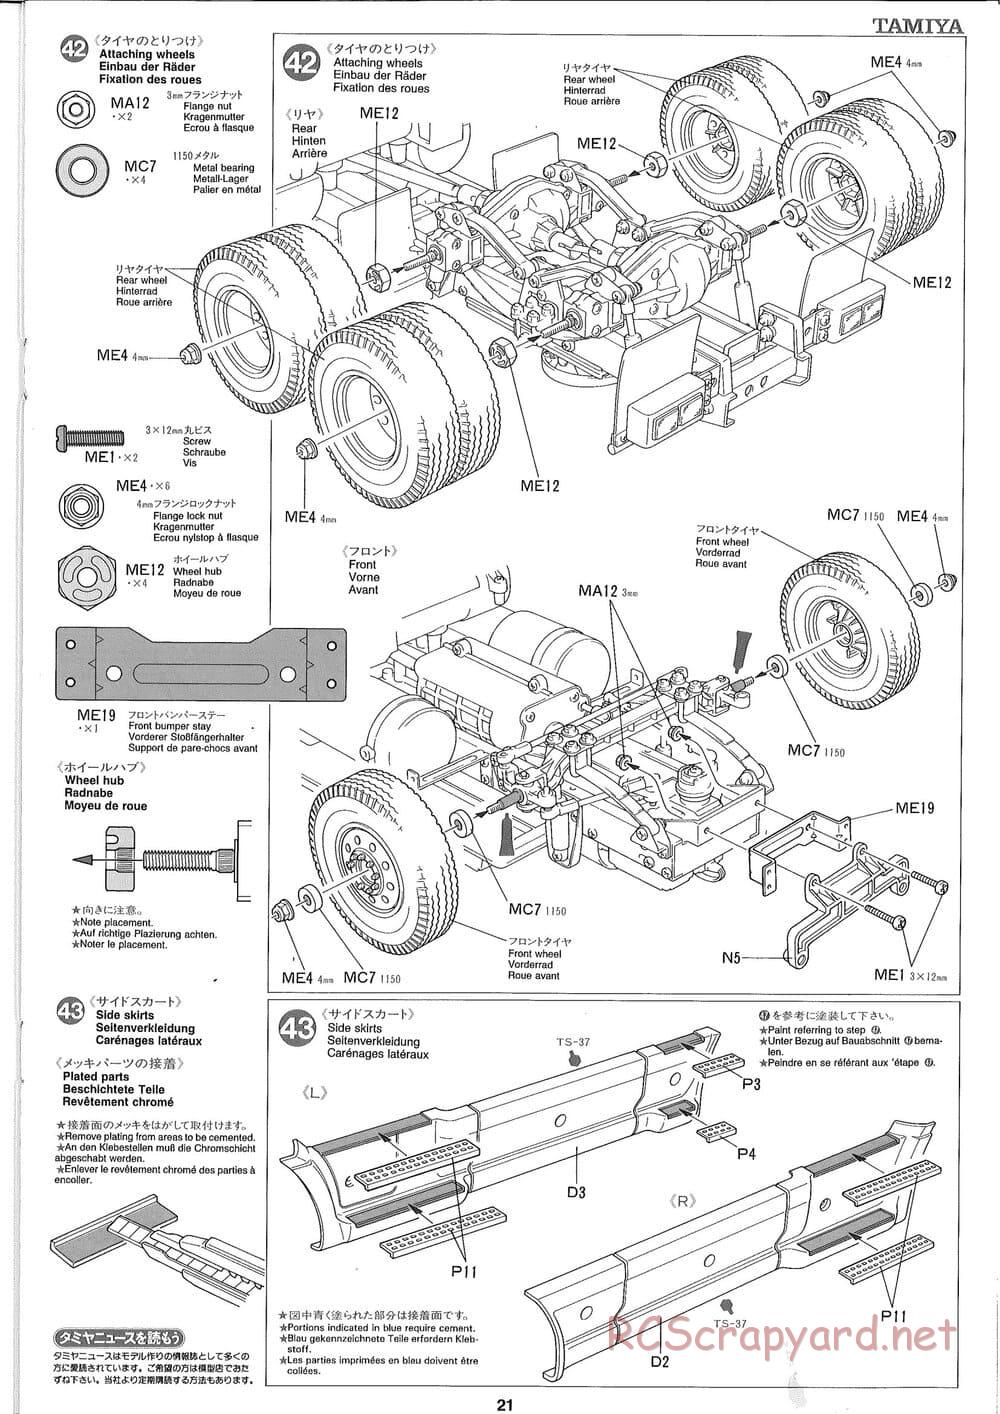 Tamiya - Ford Aeromax - Manual - Page 21